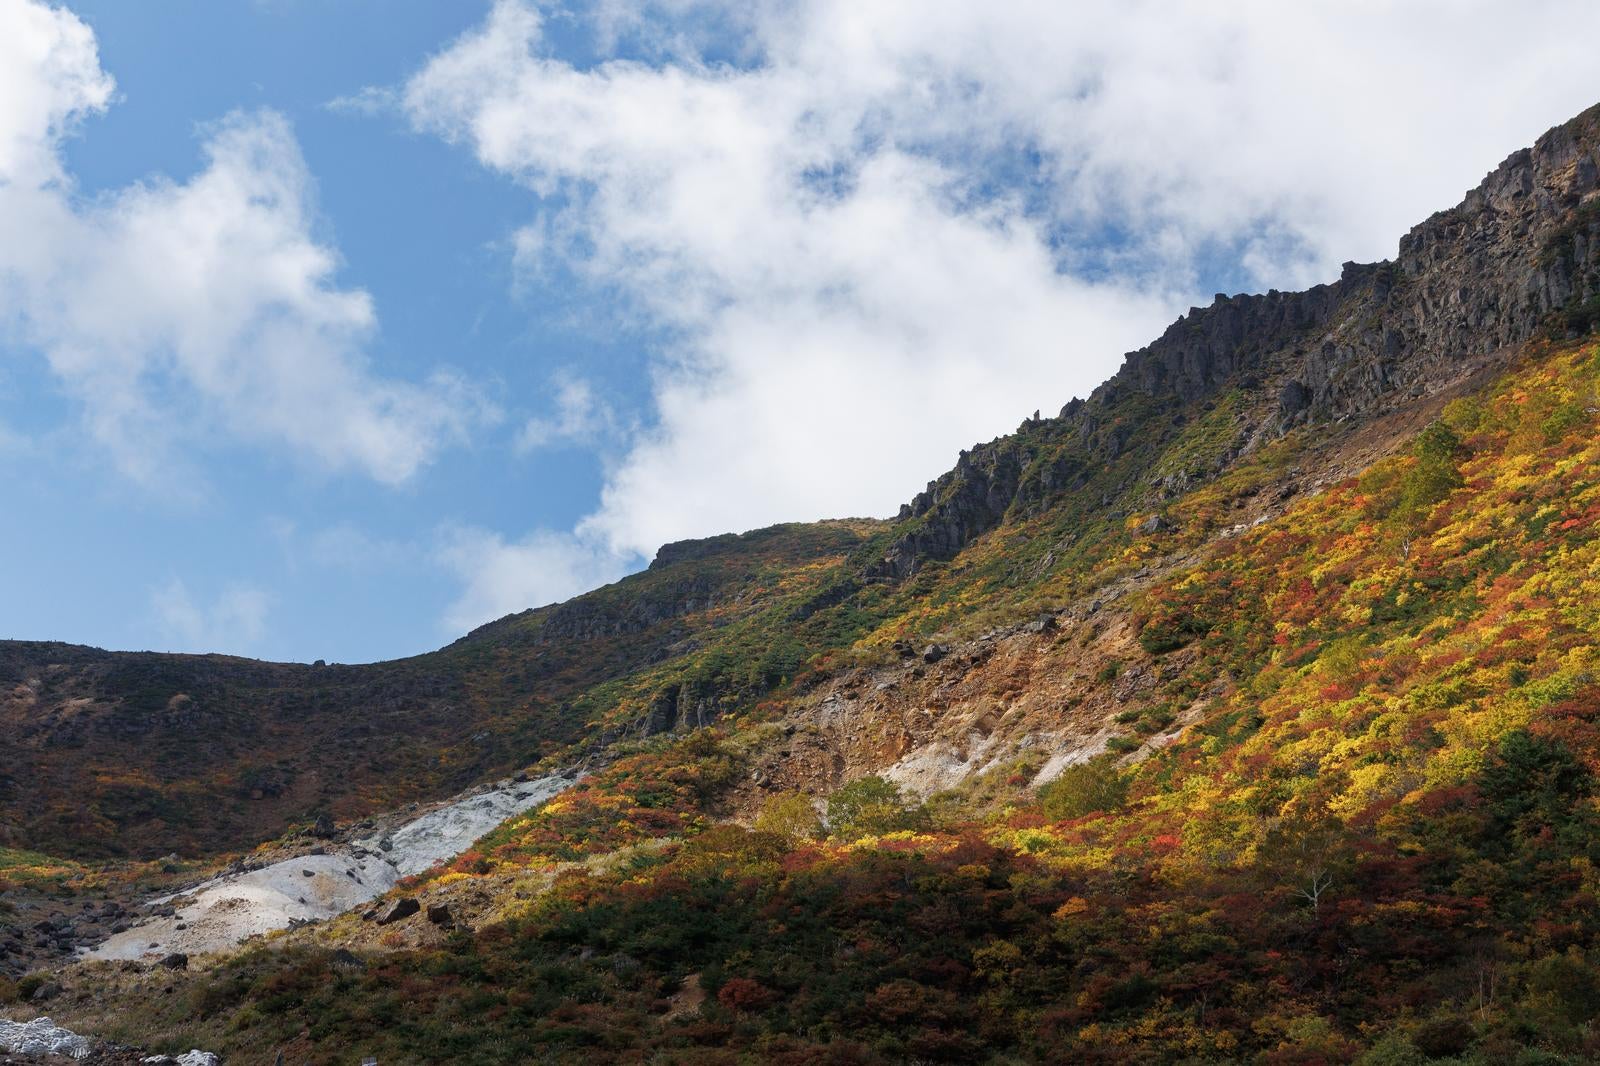 「峰の辻での秋の絶景、紅葉の自然の美」の写真